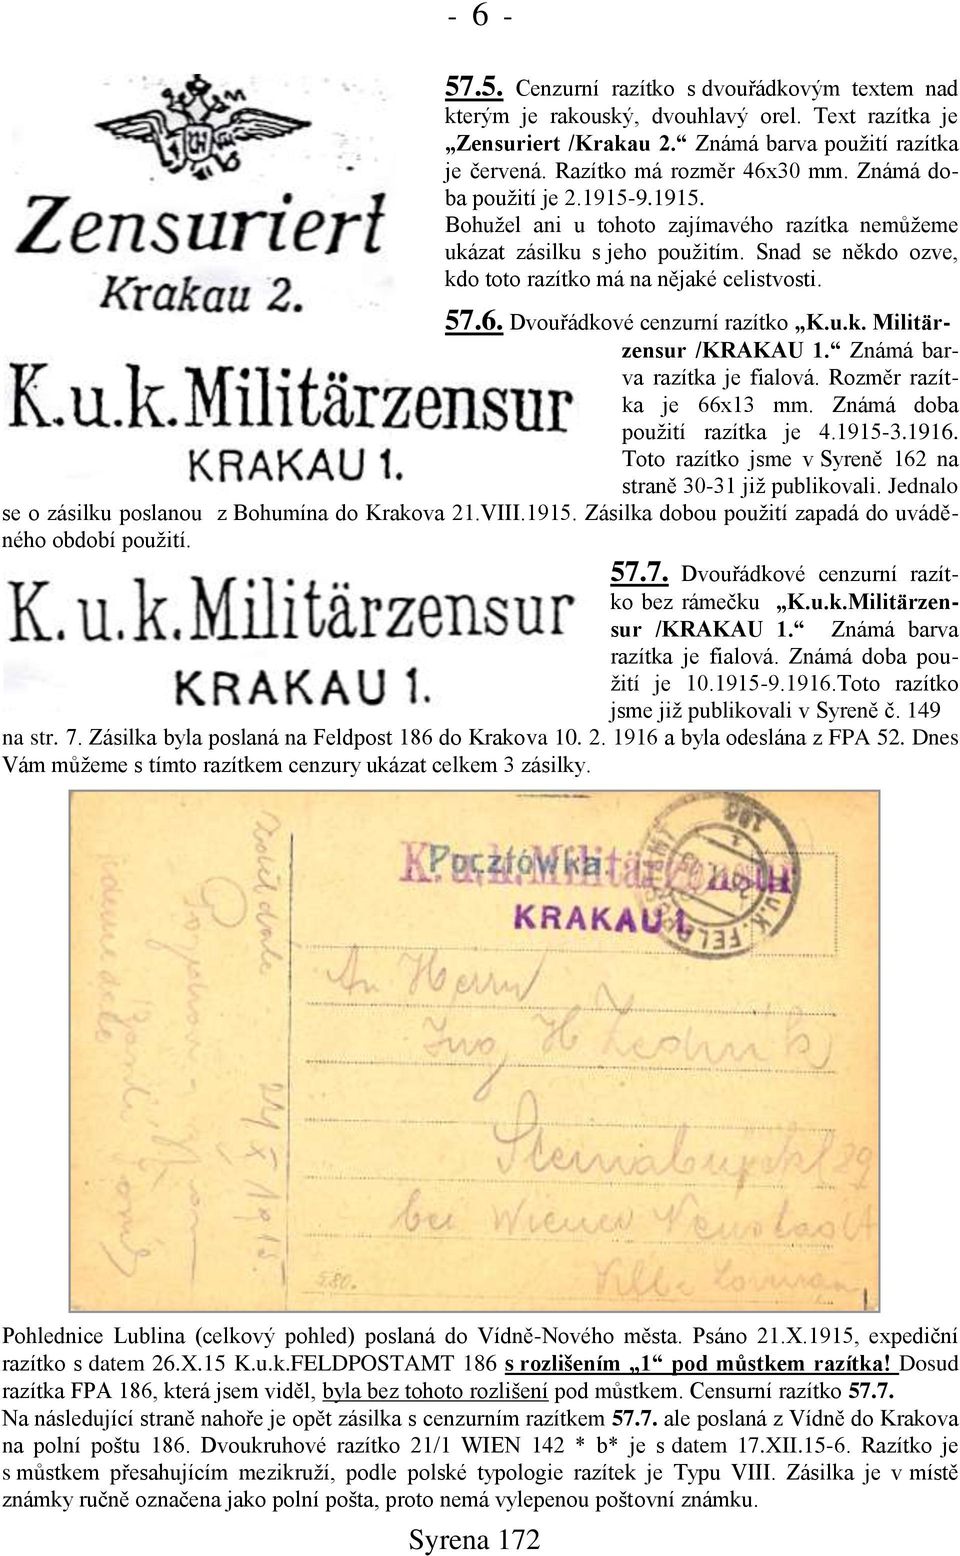 Dvouřádkové cenzurní razítko K.u.k. Militärzensur /KRAKAU 1. Známá barva razítka je fialová. Rozměr razítka je 66x13 mm. Známá doba pouņití razítka je 4.1915-3.1916.